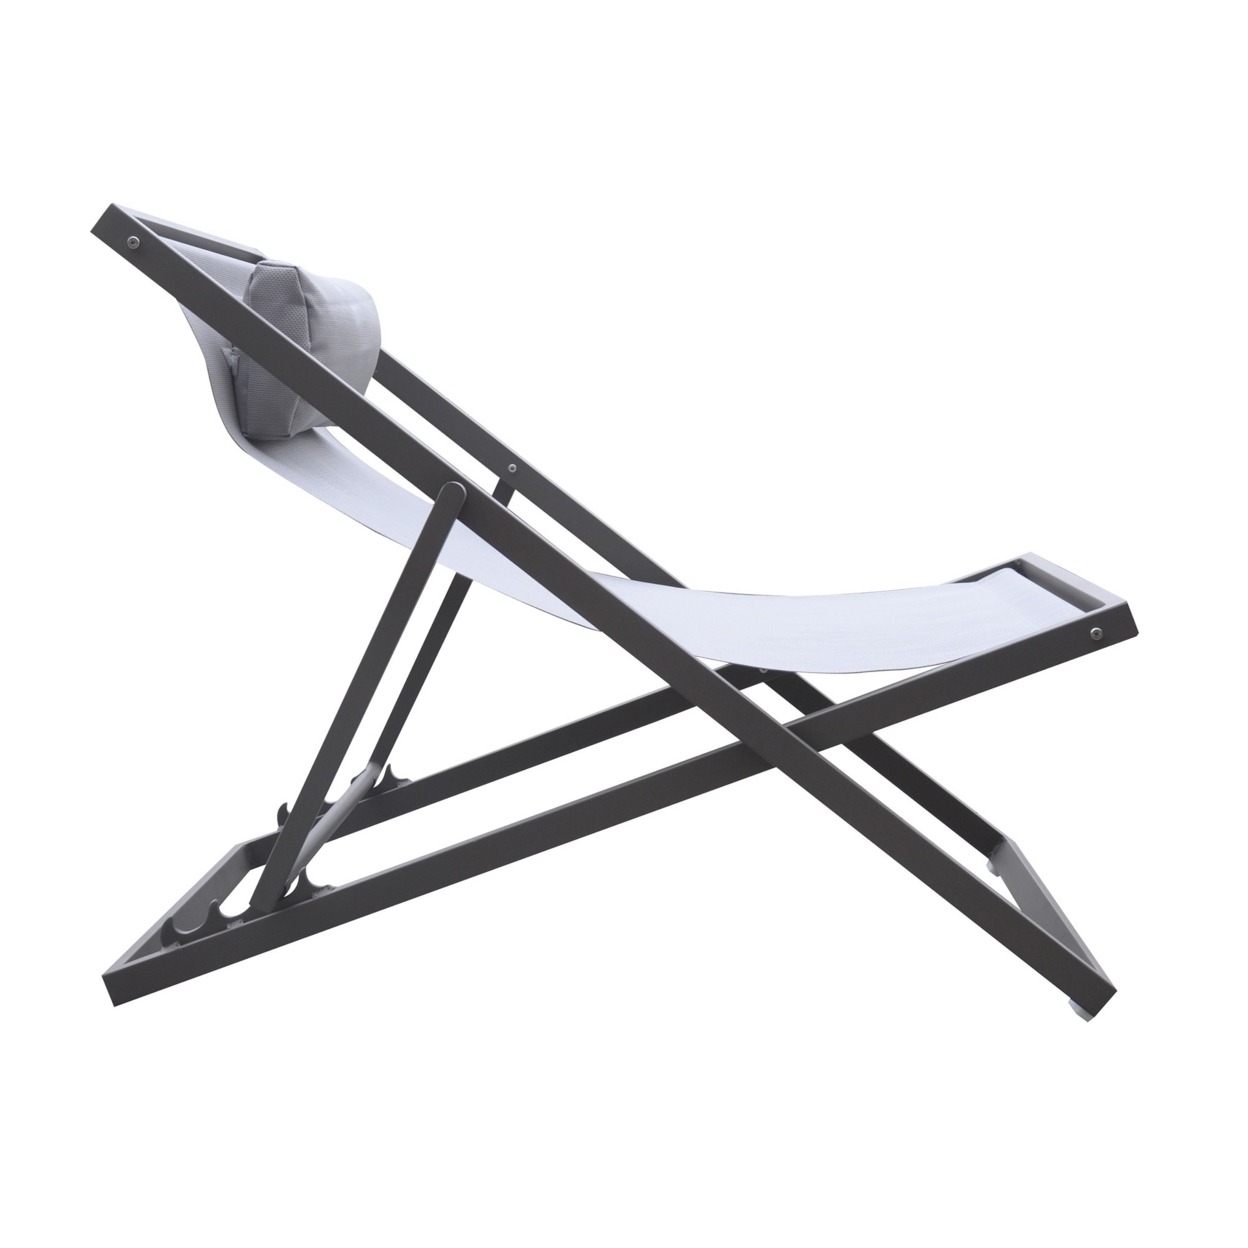 Textilene Upholstered Deck Chair With Padded Headrest, Gray- Saltoro Sherpi